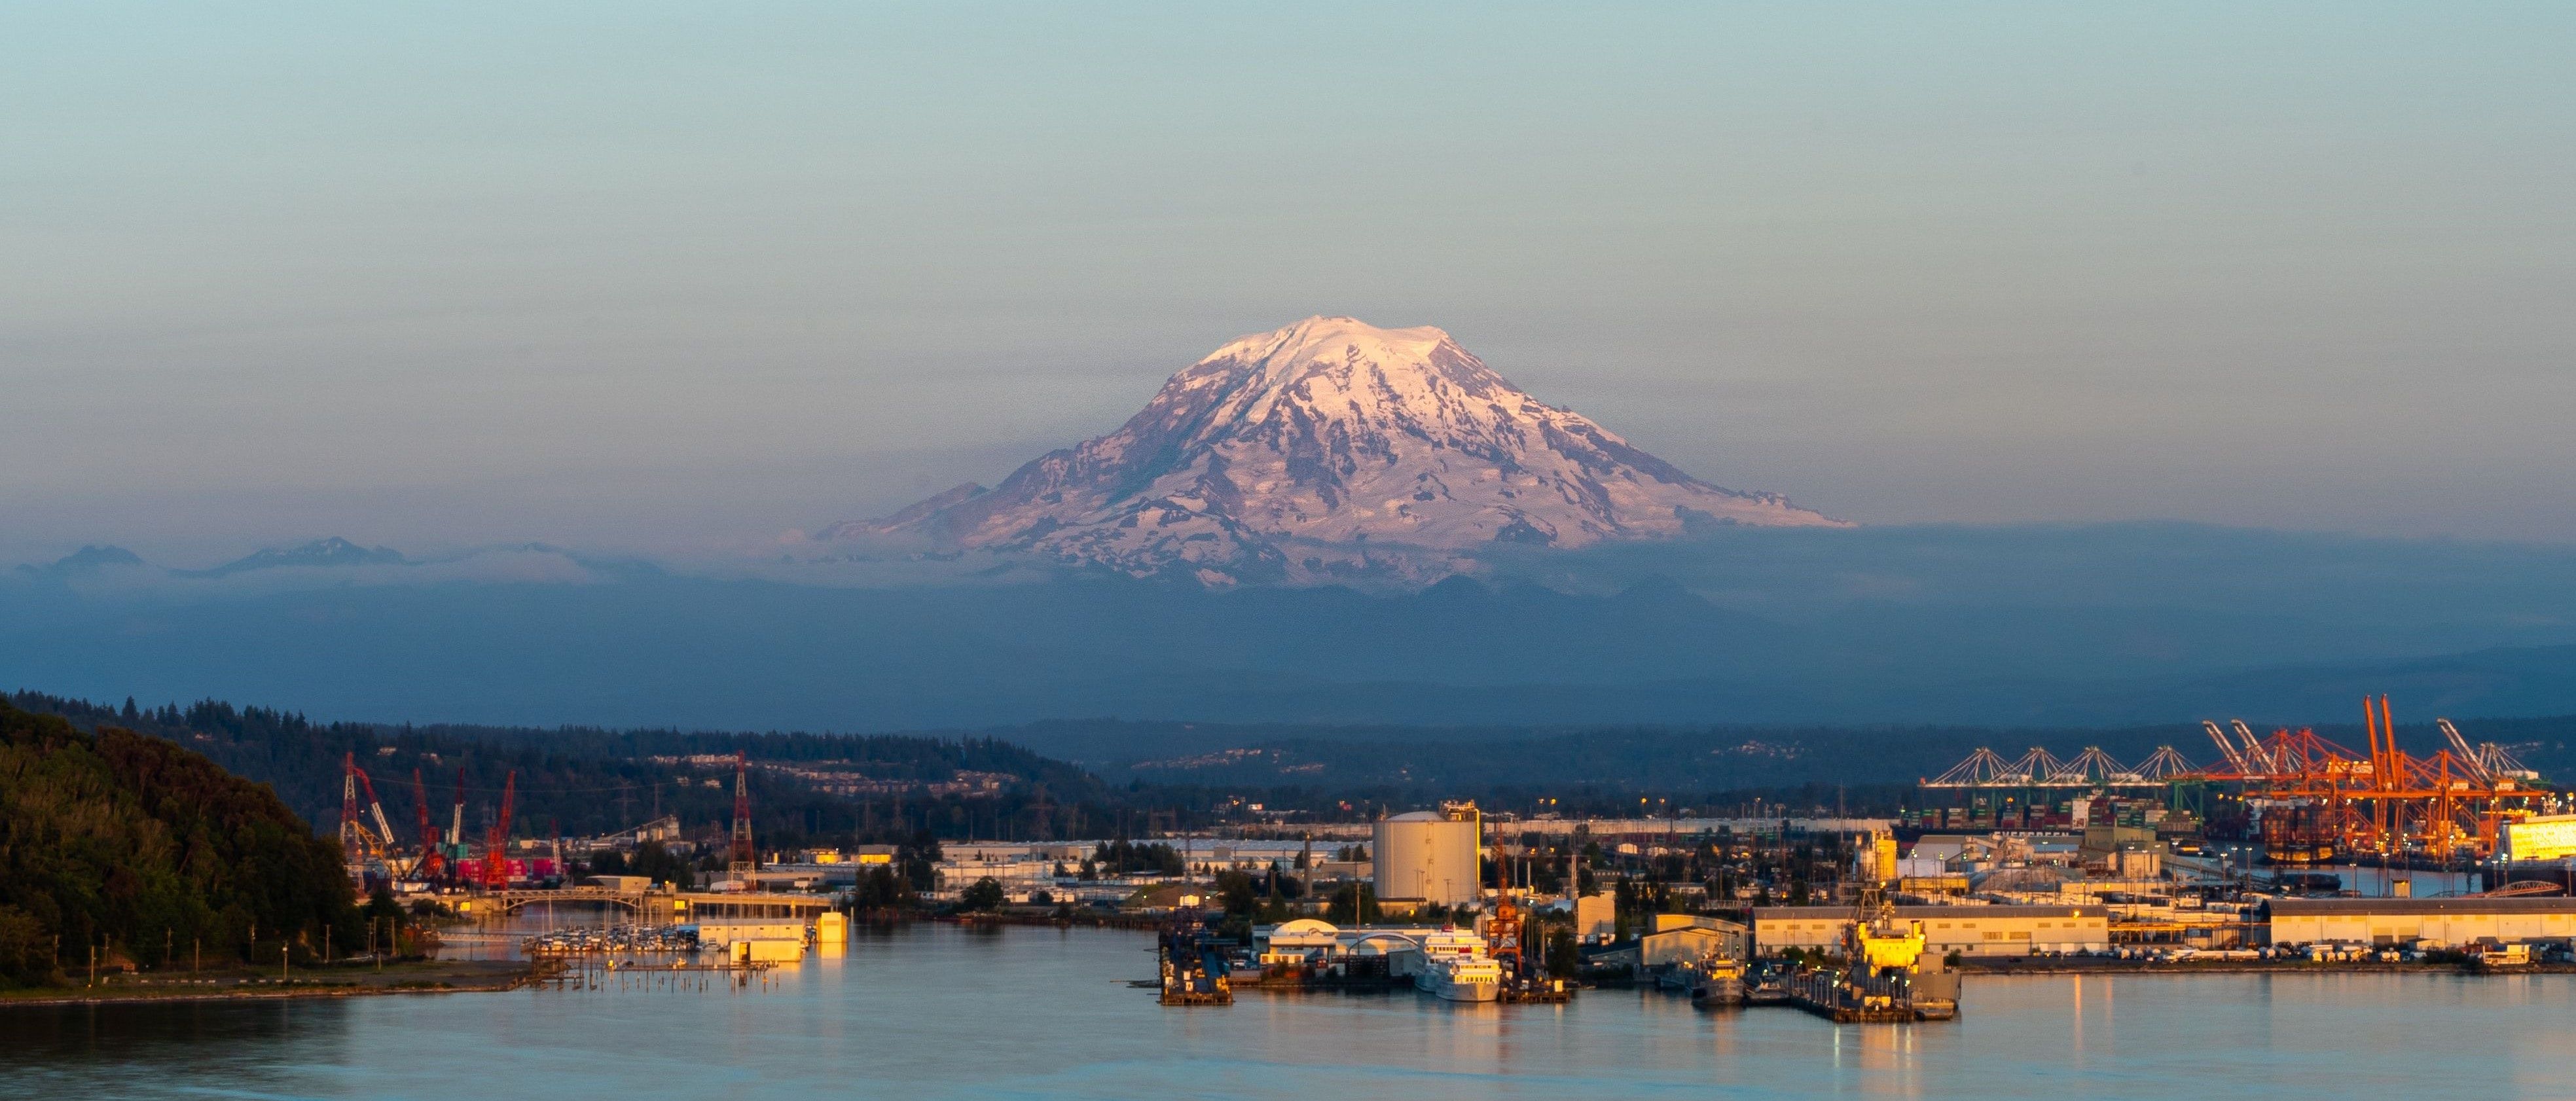 Tacoma, Washington - best time to visit